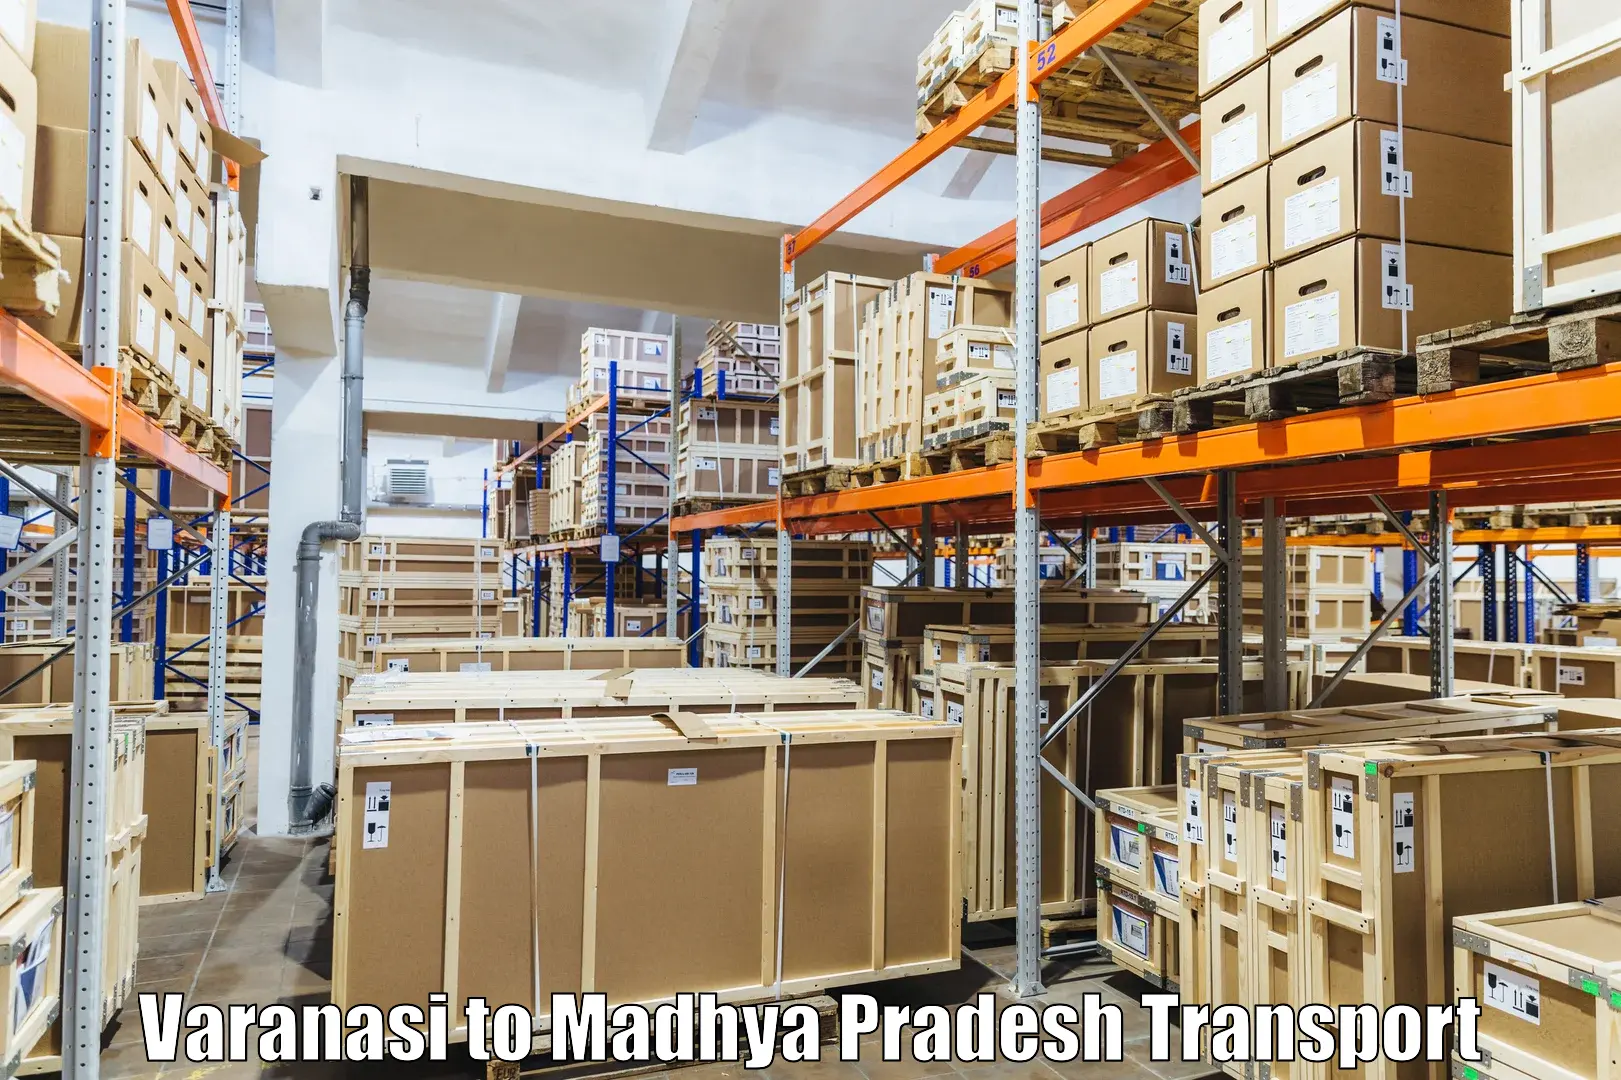 Cargo transport services Varanasi to Manawar